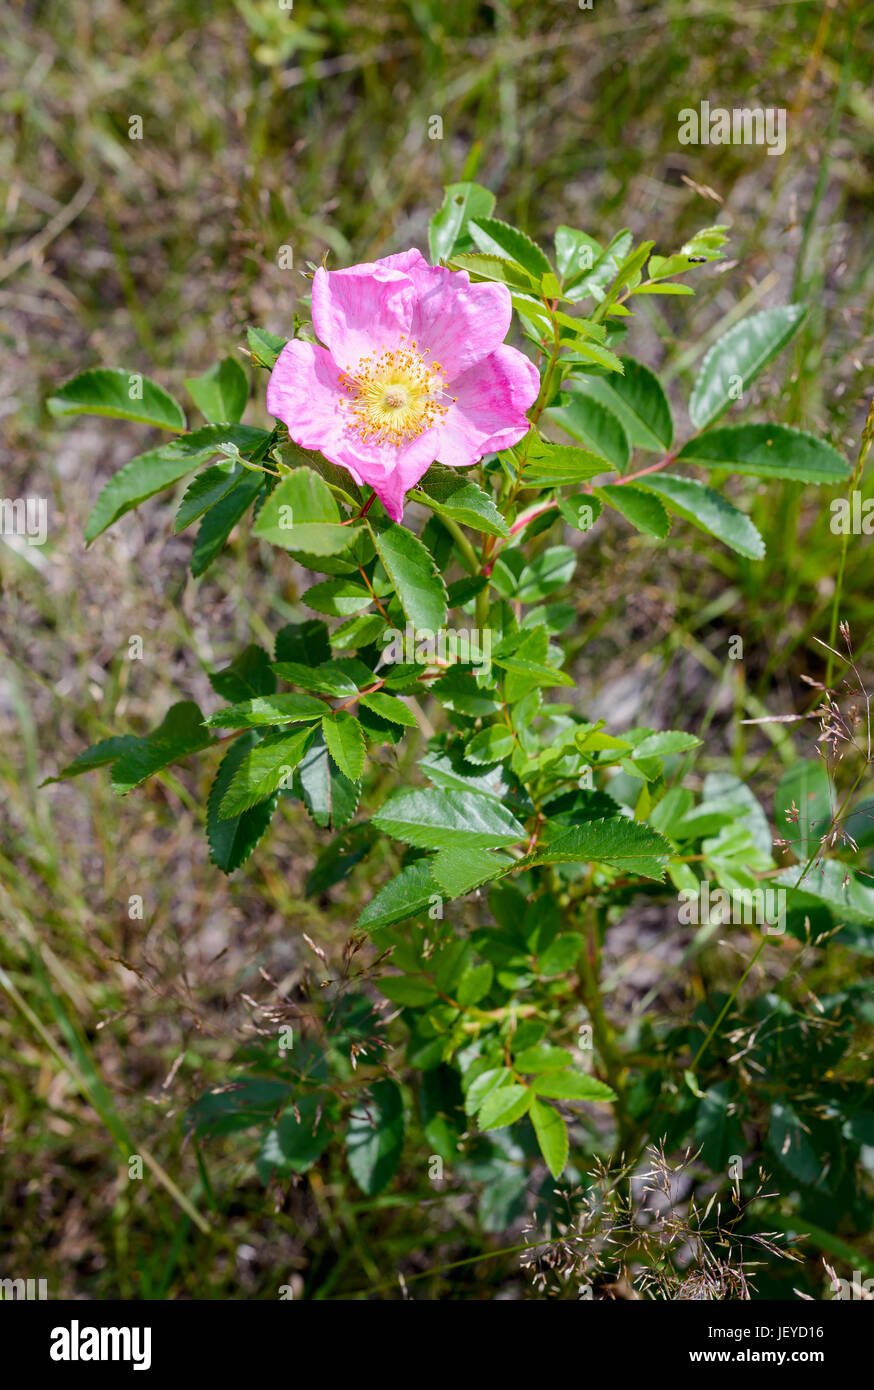 Eine schöne Rosa Rubiginosa, auch bekannt als Briar rose, Hundsrose, sweet Briar, Sweetbriar rose, süße Brier, Hagebutte oder Eglantine, unter der warmen Frühlingssonne su Stockfoto